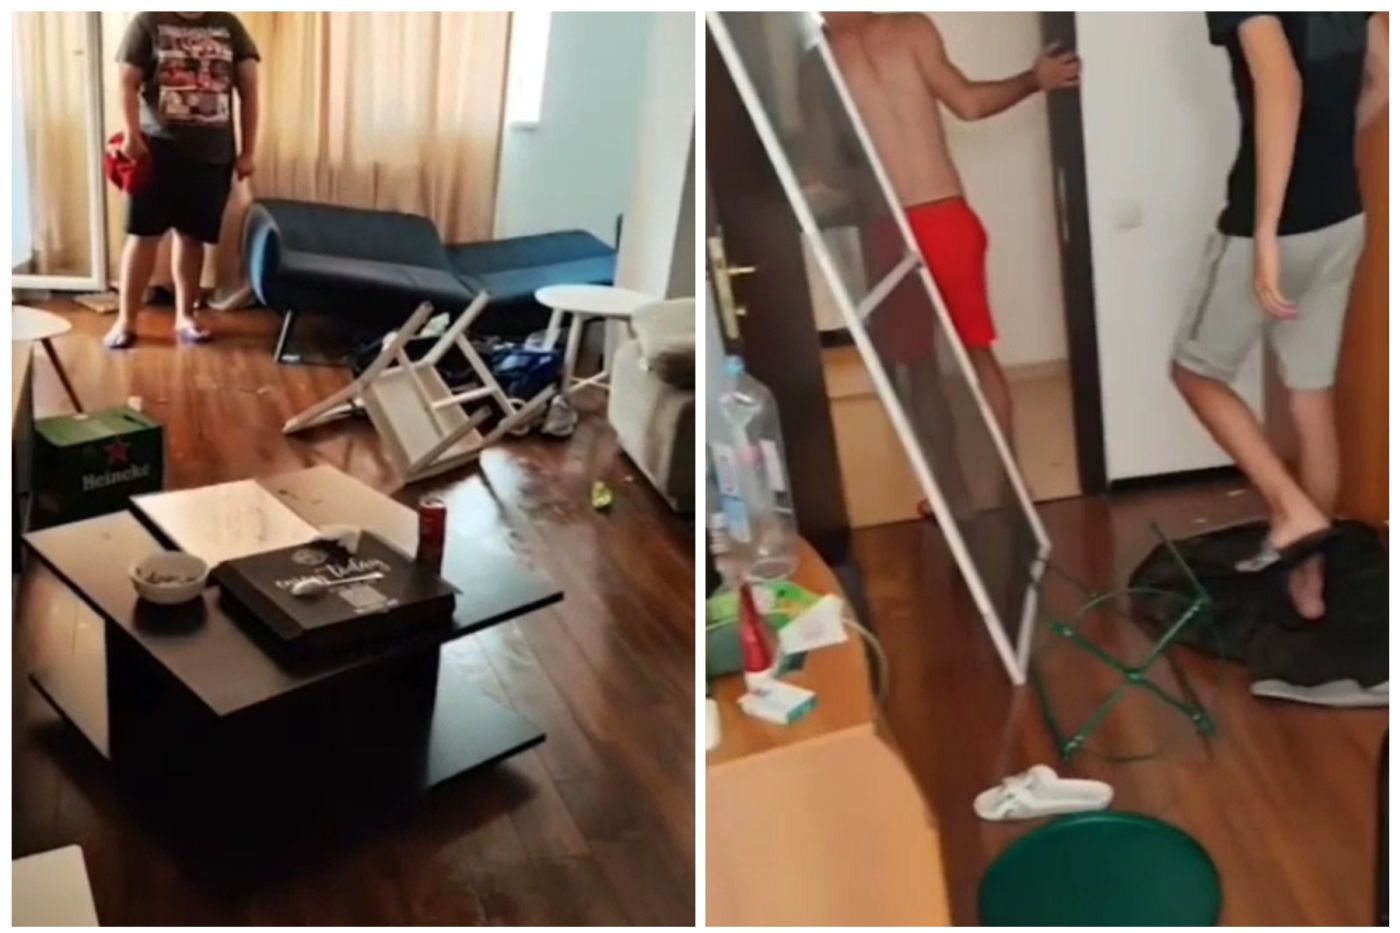 Apartament din Mamaia devastat de cei care l-au închiriat VIDEO